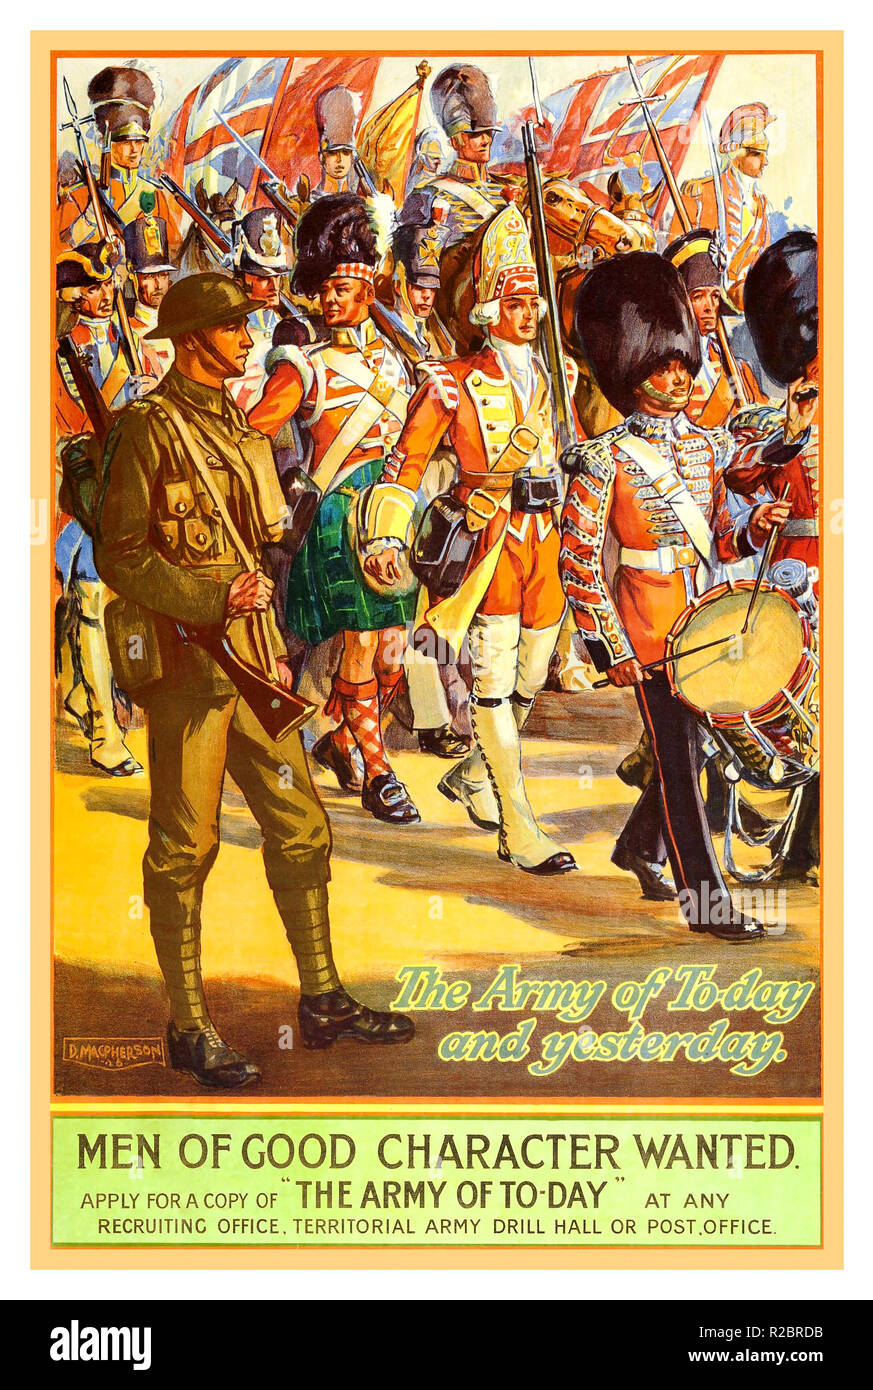 Vintage WW1 1913 affiche de propagande de l'armée britannique de l'Affiche de recrutement illustrant la Grande Bretagne les armées en marche uniforme à travers l'histoire.. L'armée d'aujourd'hui et hier.. "Les hommes de bonne moralité voulait' 'l'armée d'aujourd'hui' Banque D'Images